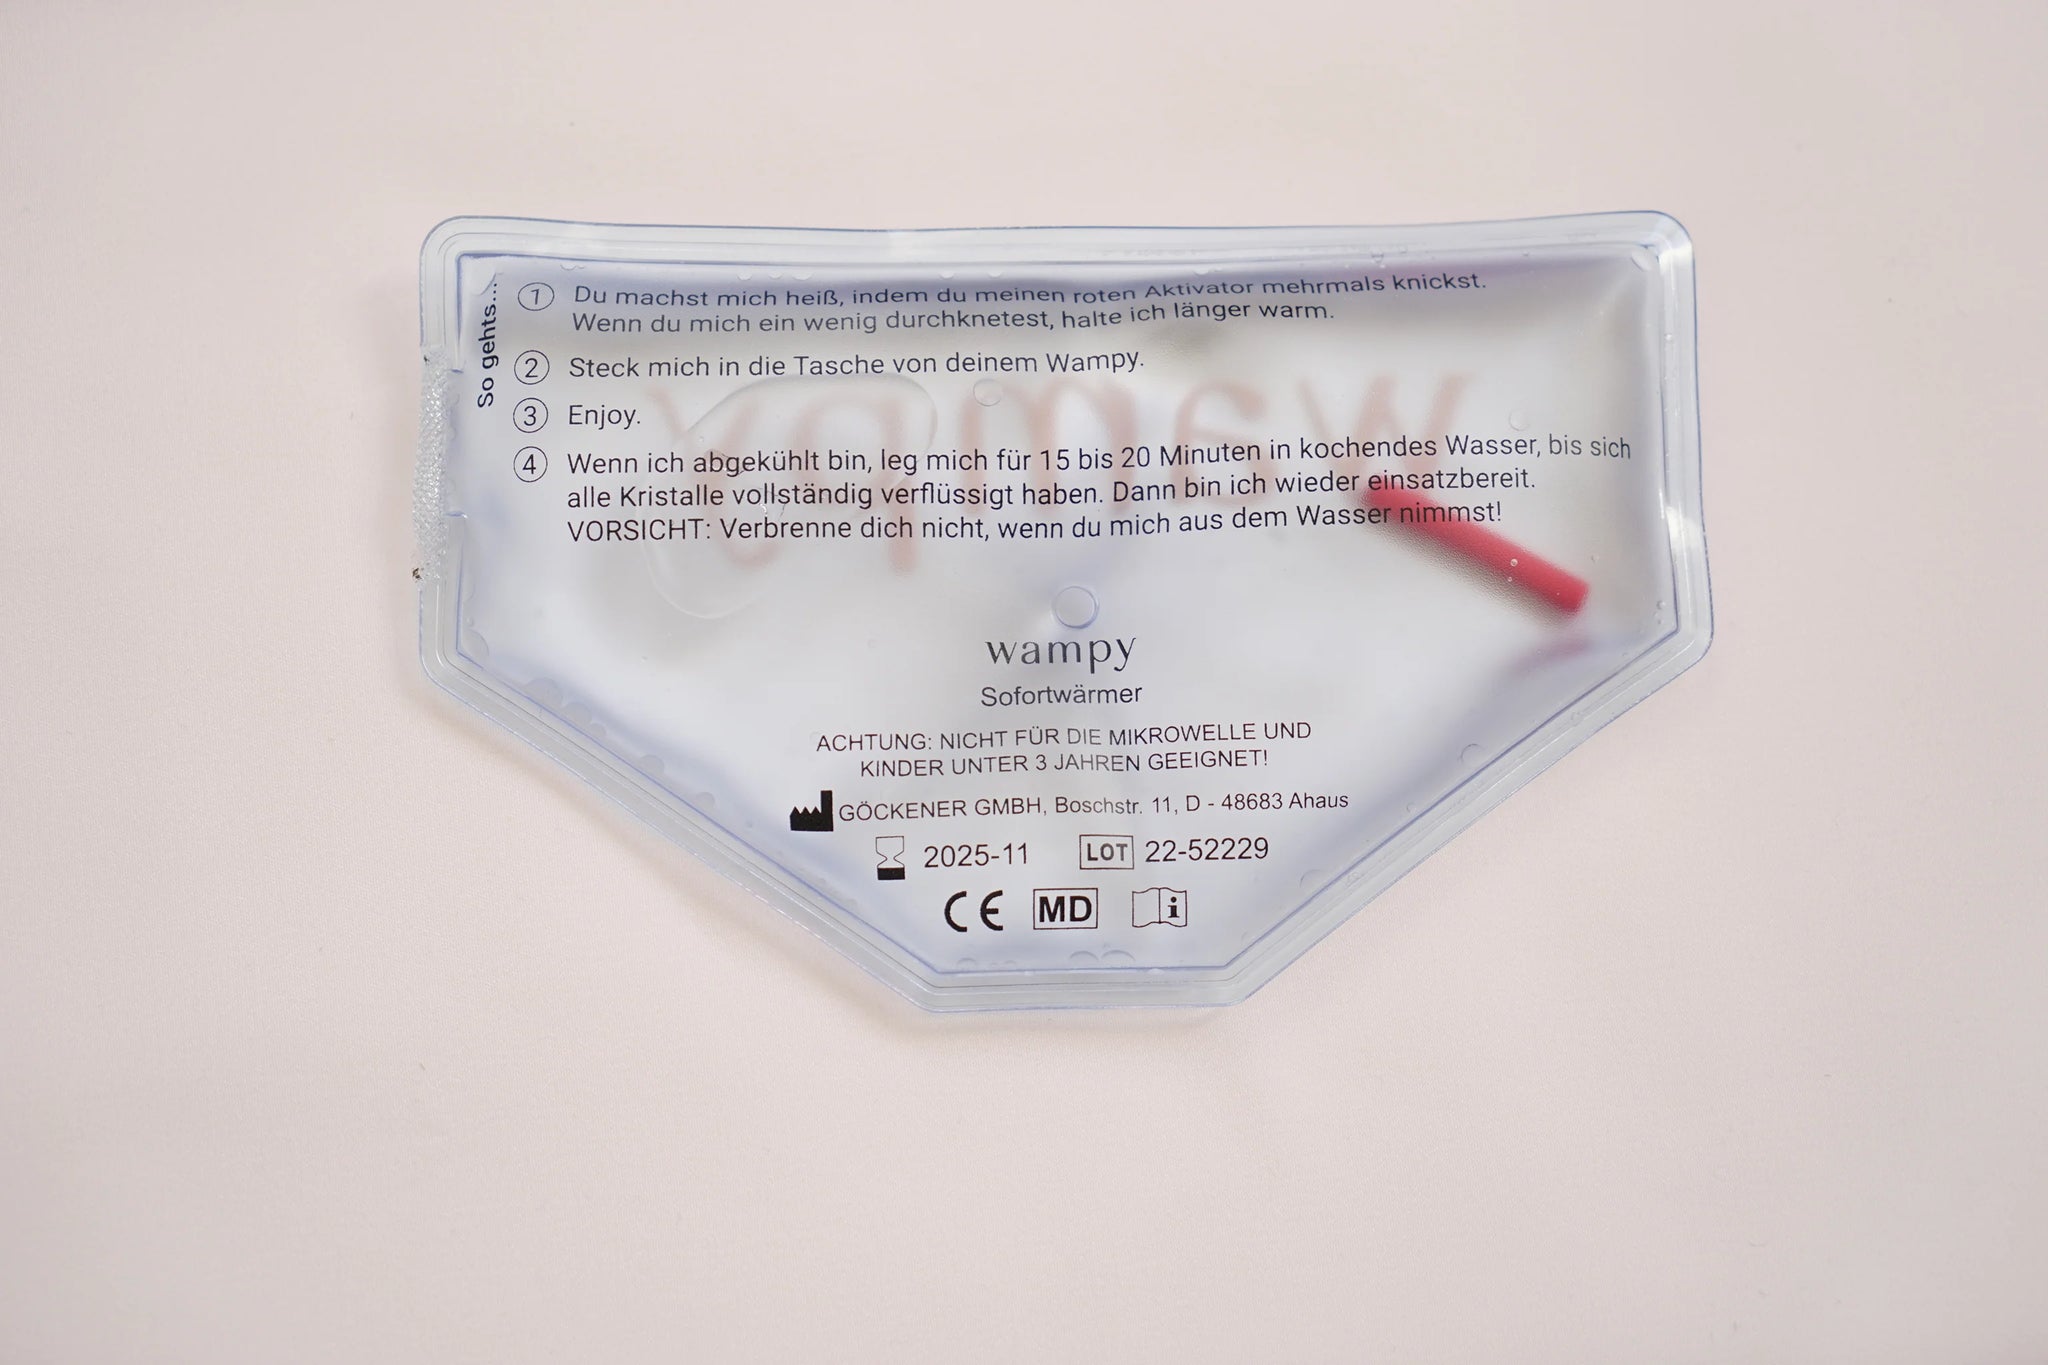 Wampy Wärmepad Rückseite mit Anleitung. Die Wärme von Wampy Wärmepads lindert effektiv Regelschmerzen. 